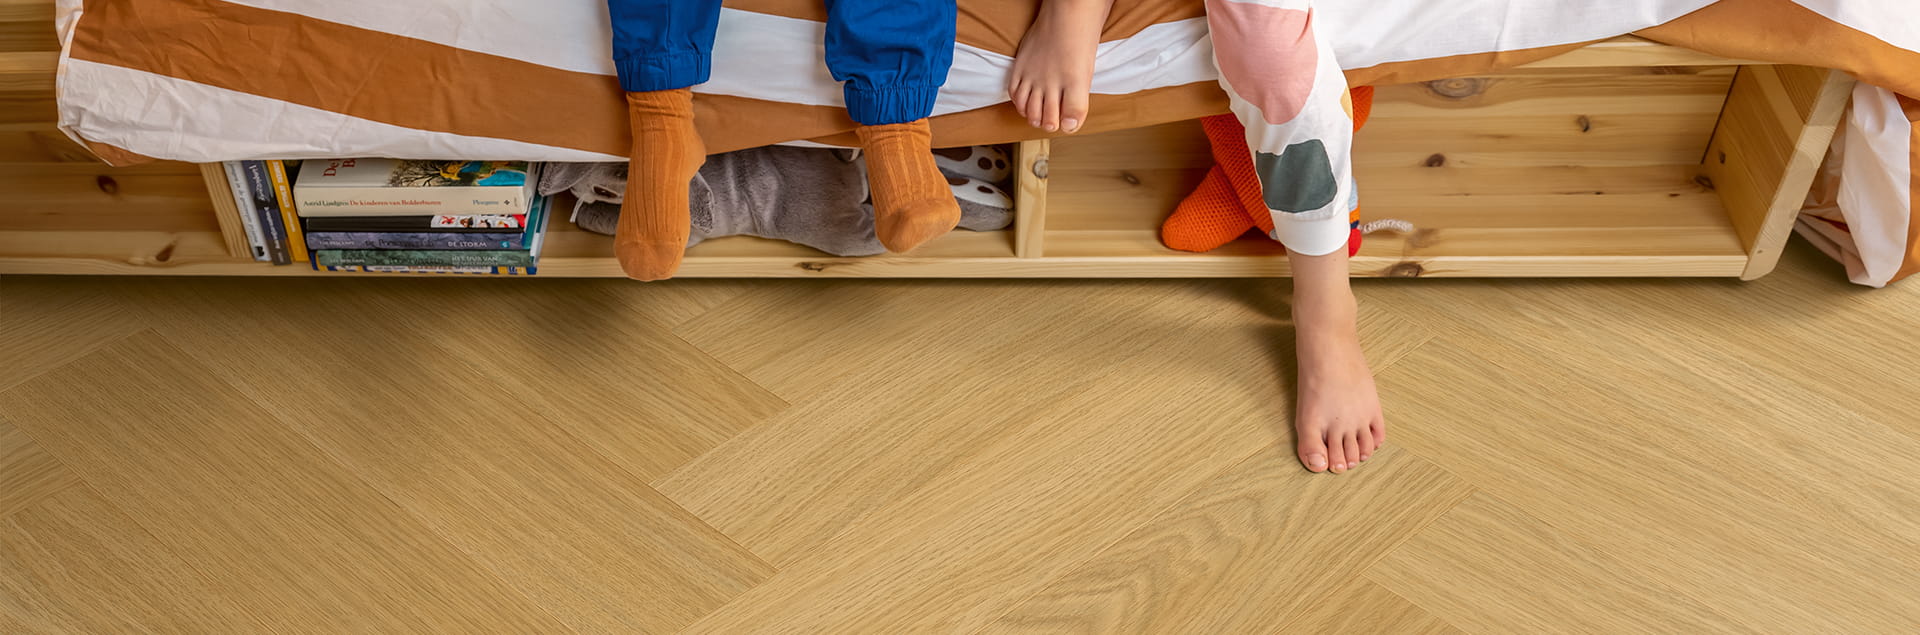 Kids room with brown herringbone vinyl flooring